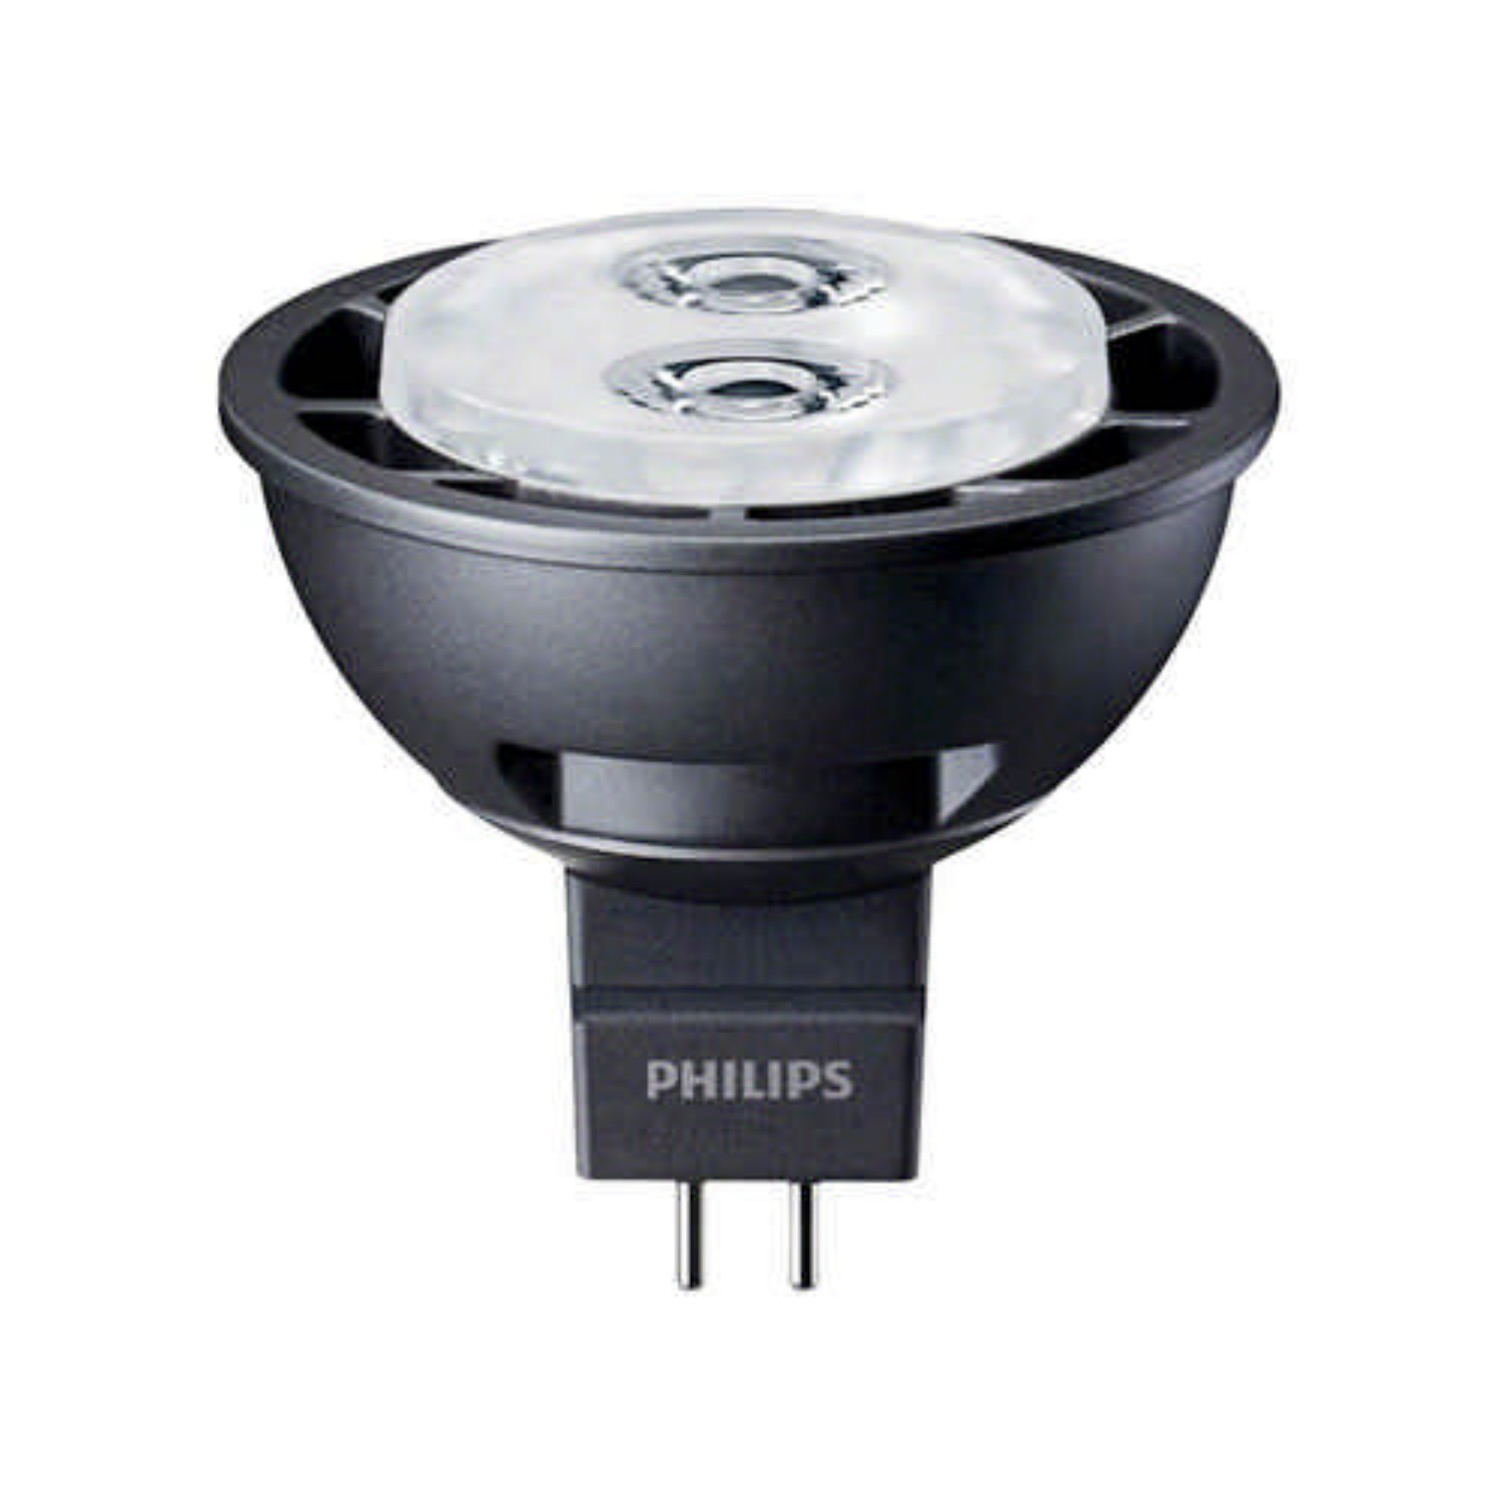 Philips Master LEDspot LV MR16 4,5 Watt GU5.3 12V 24 Grad 2700 Kelvin warmweiss extra mit 207 lm